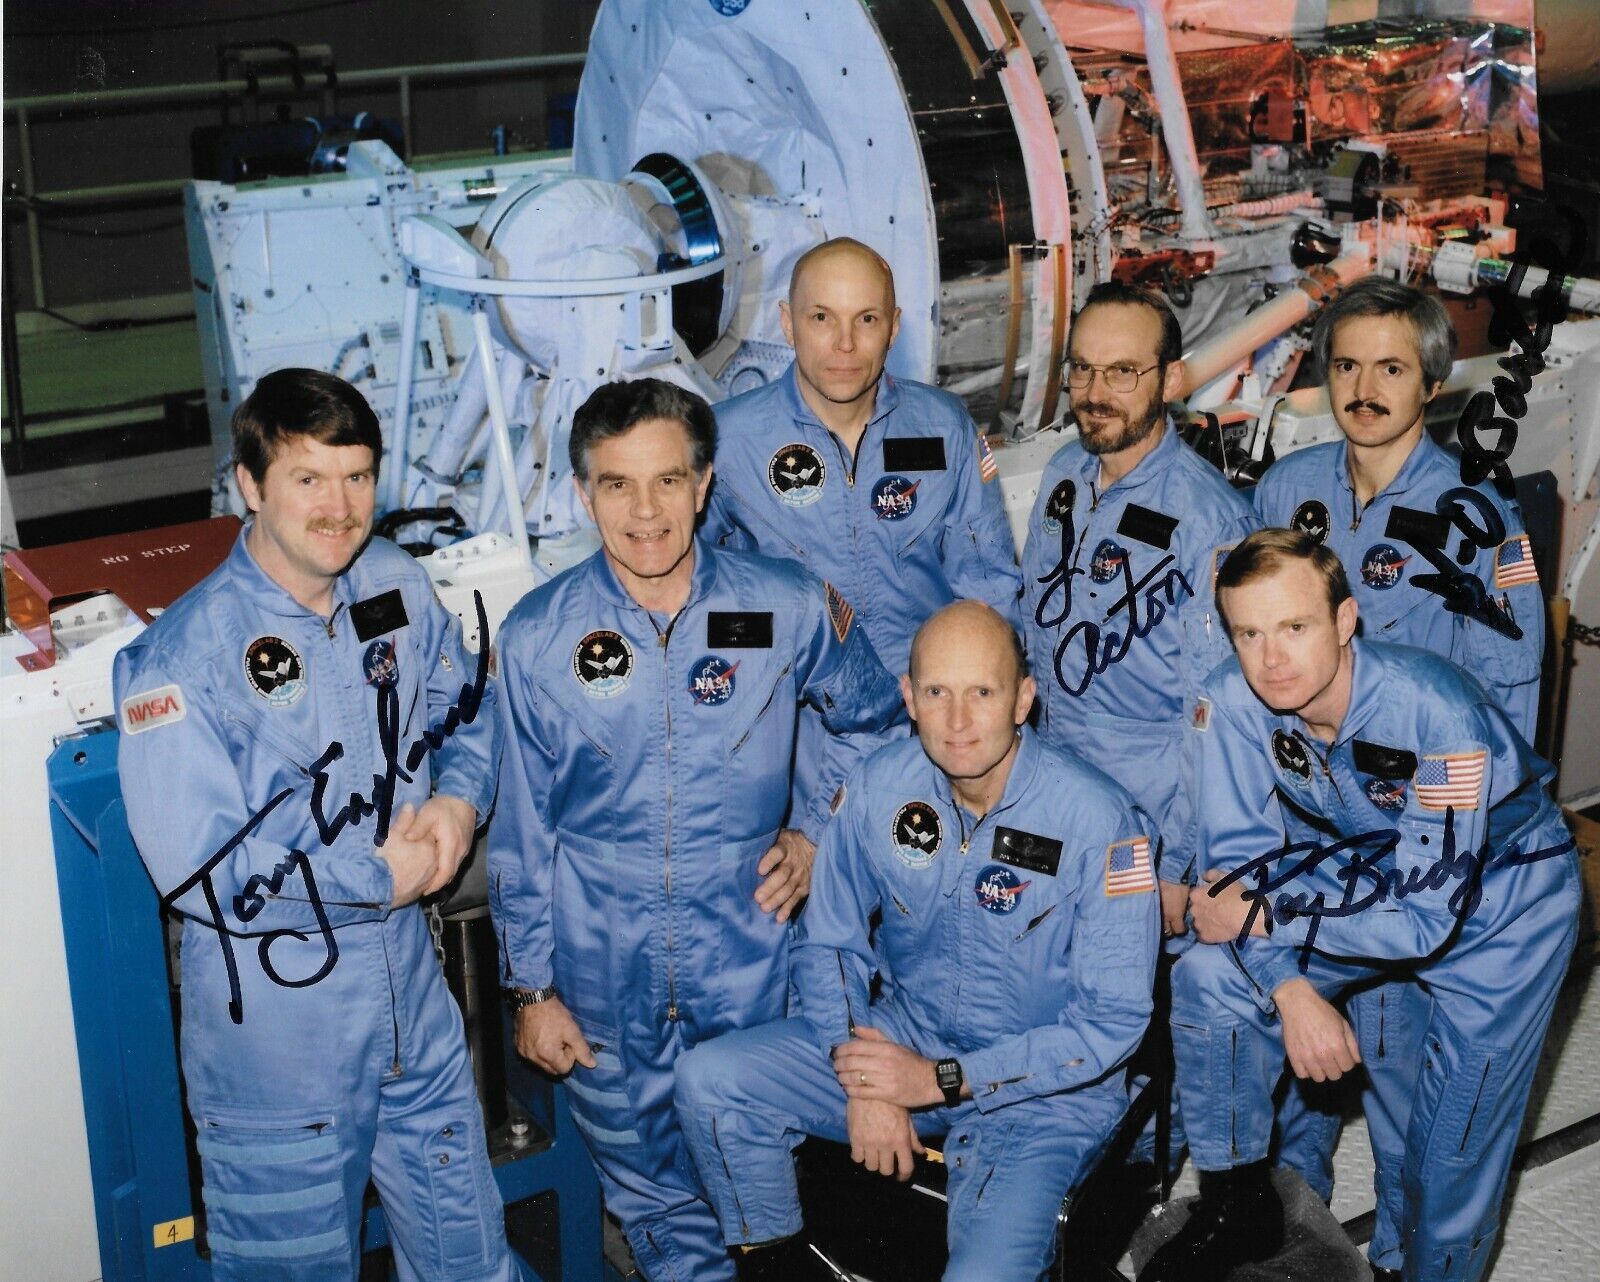 TONY ENGLAND LOREN ACTON ROY BRIDGES JD BARTOE Signed 8x10 Photo NASA Astronauts